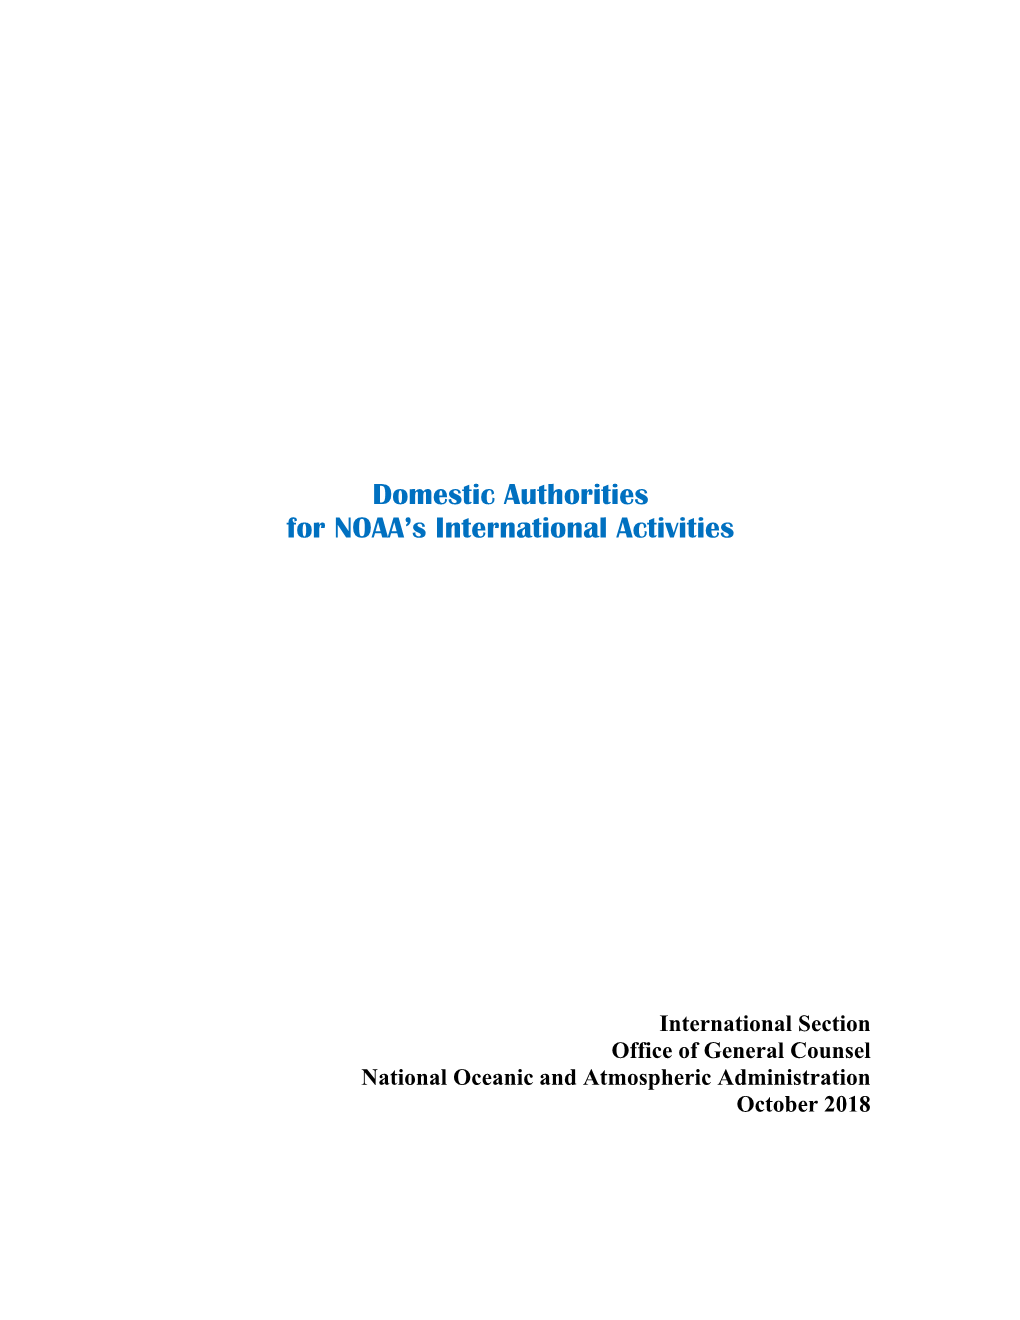 Authorities for NOAA's International Activities